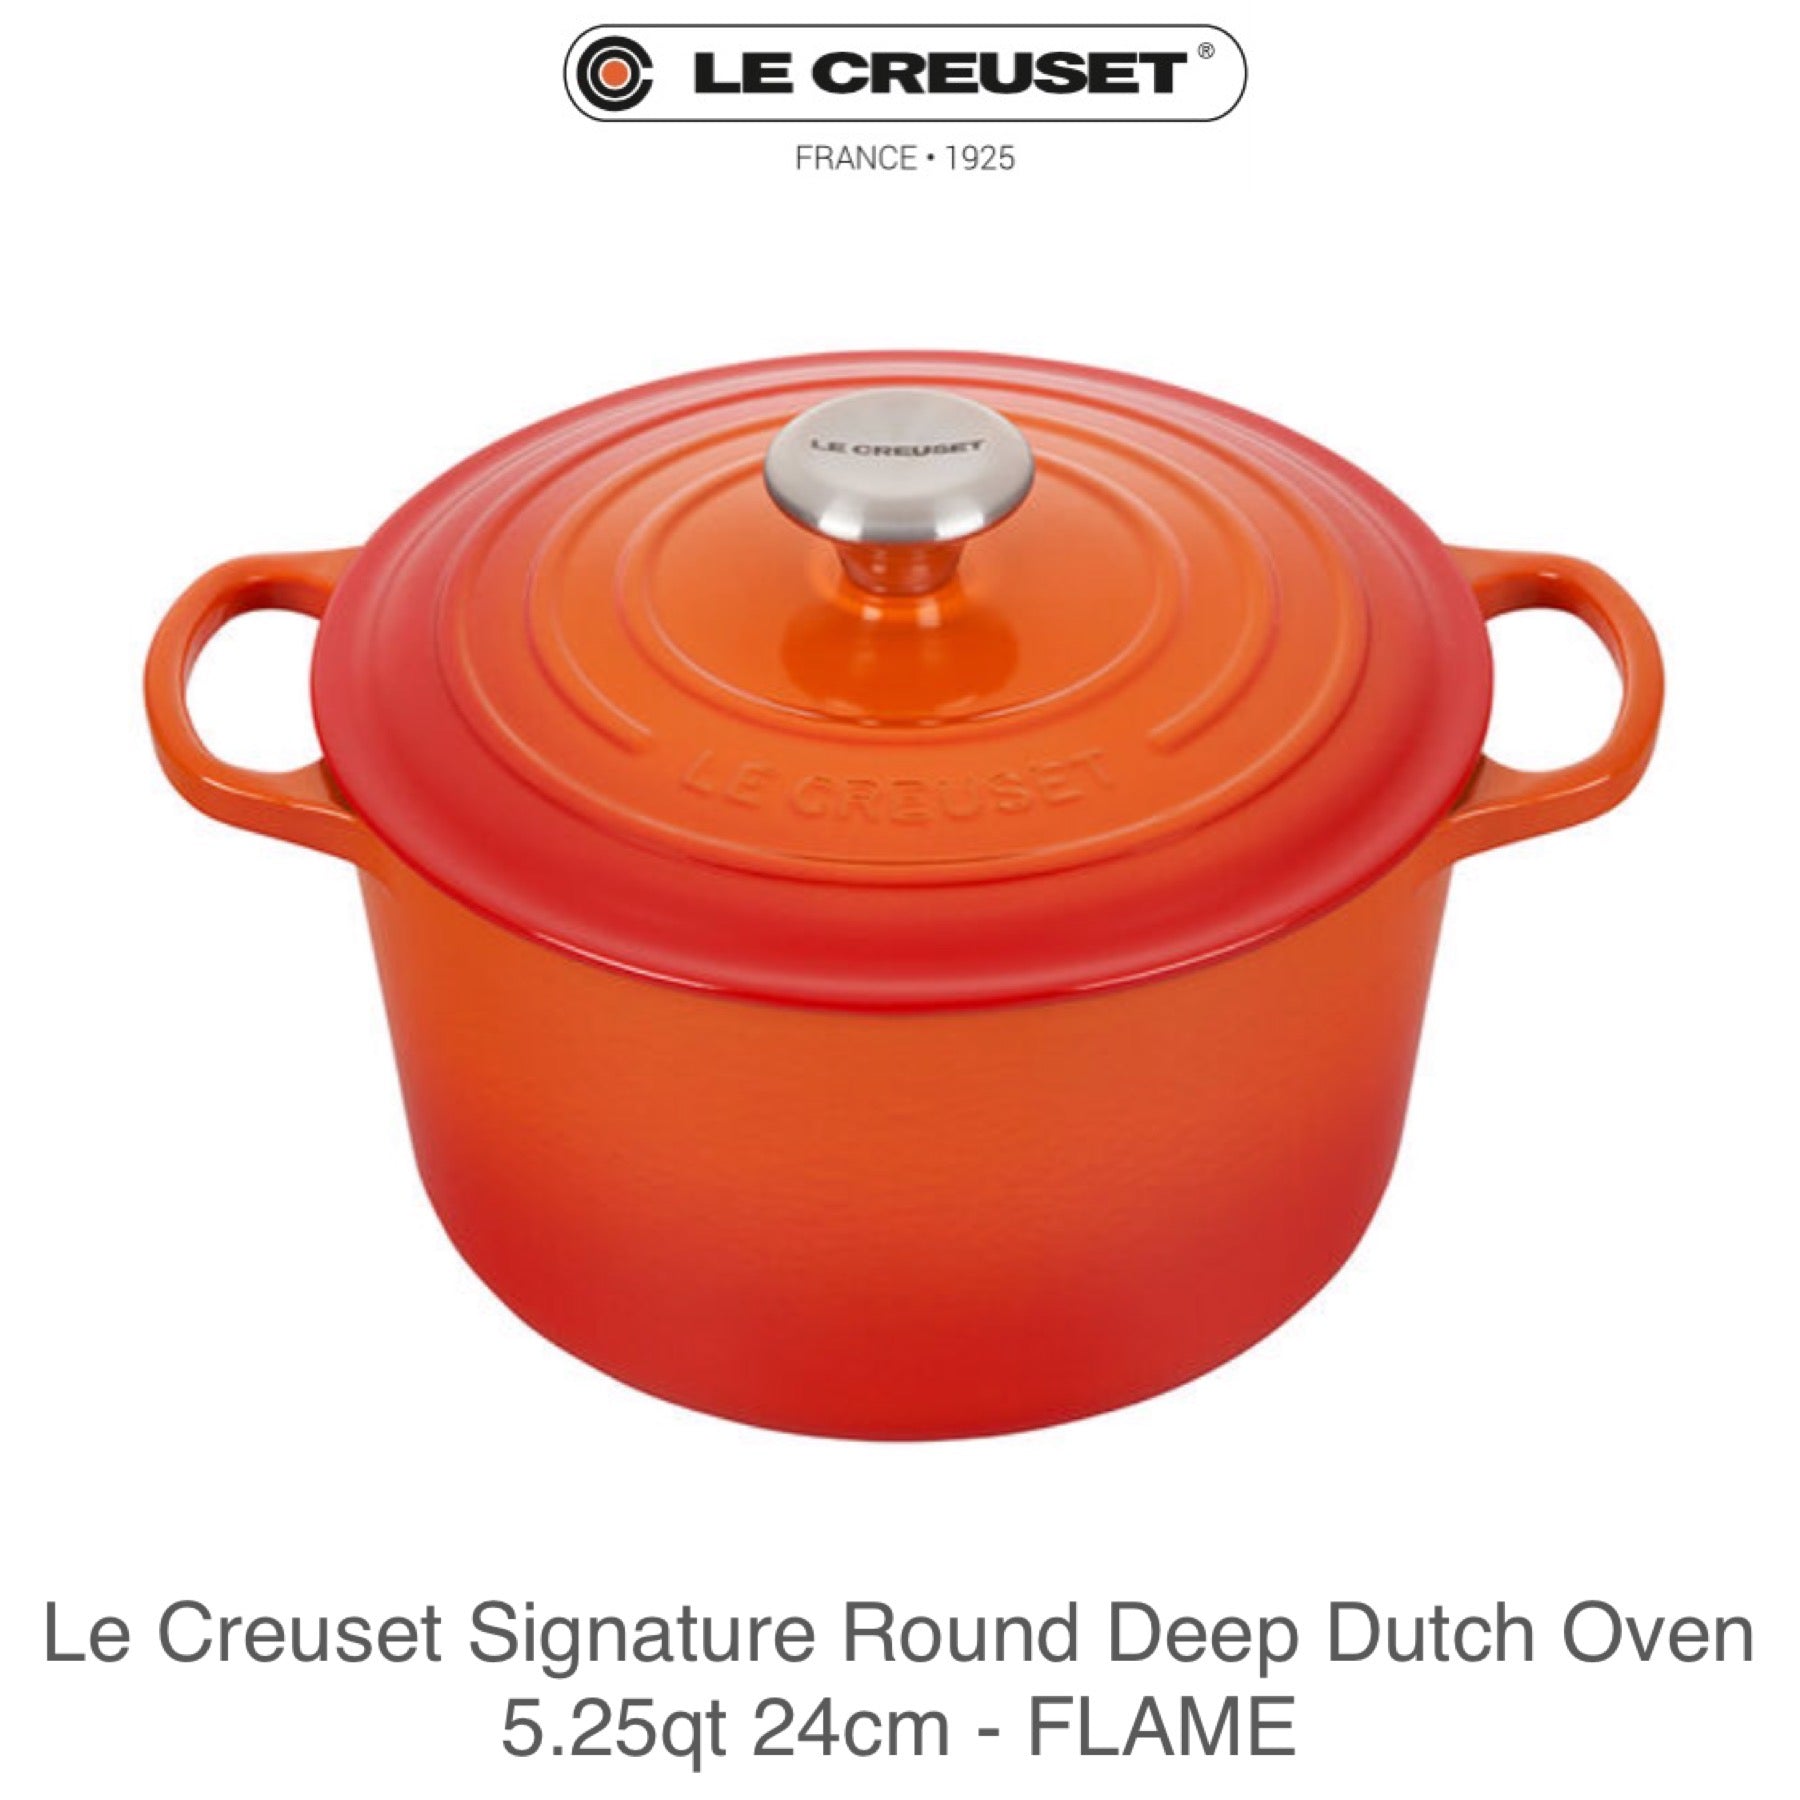 Le Creuset 3.5 qt. Signature Round Dutch Oven - Flame